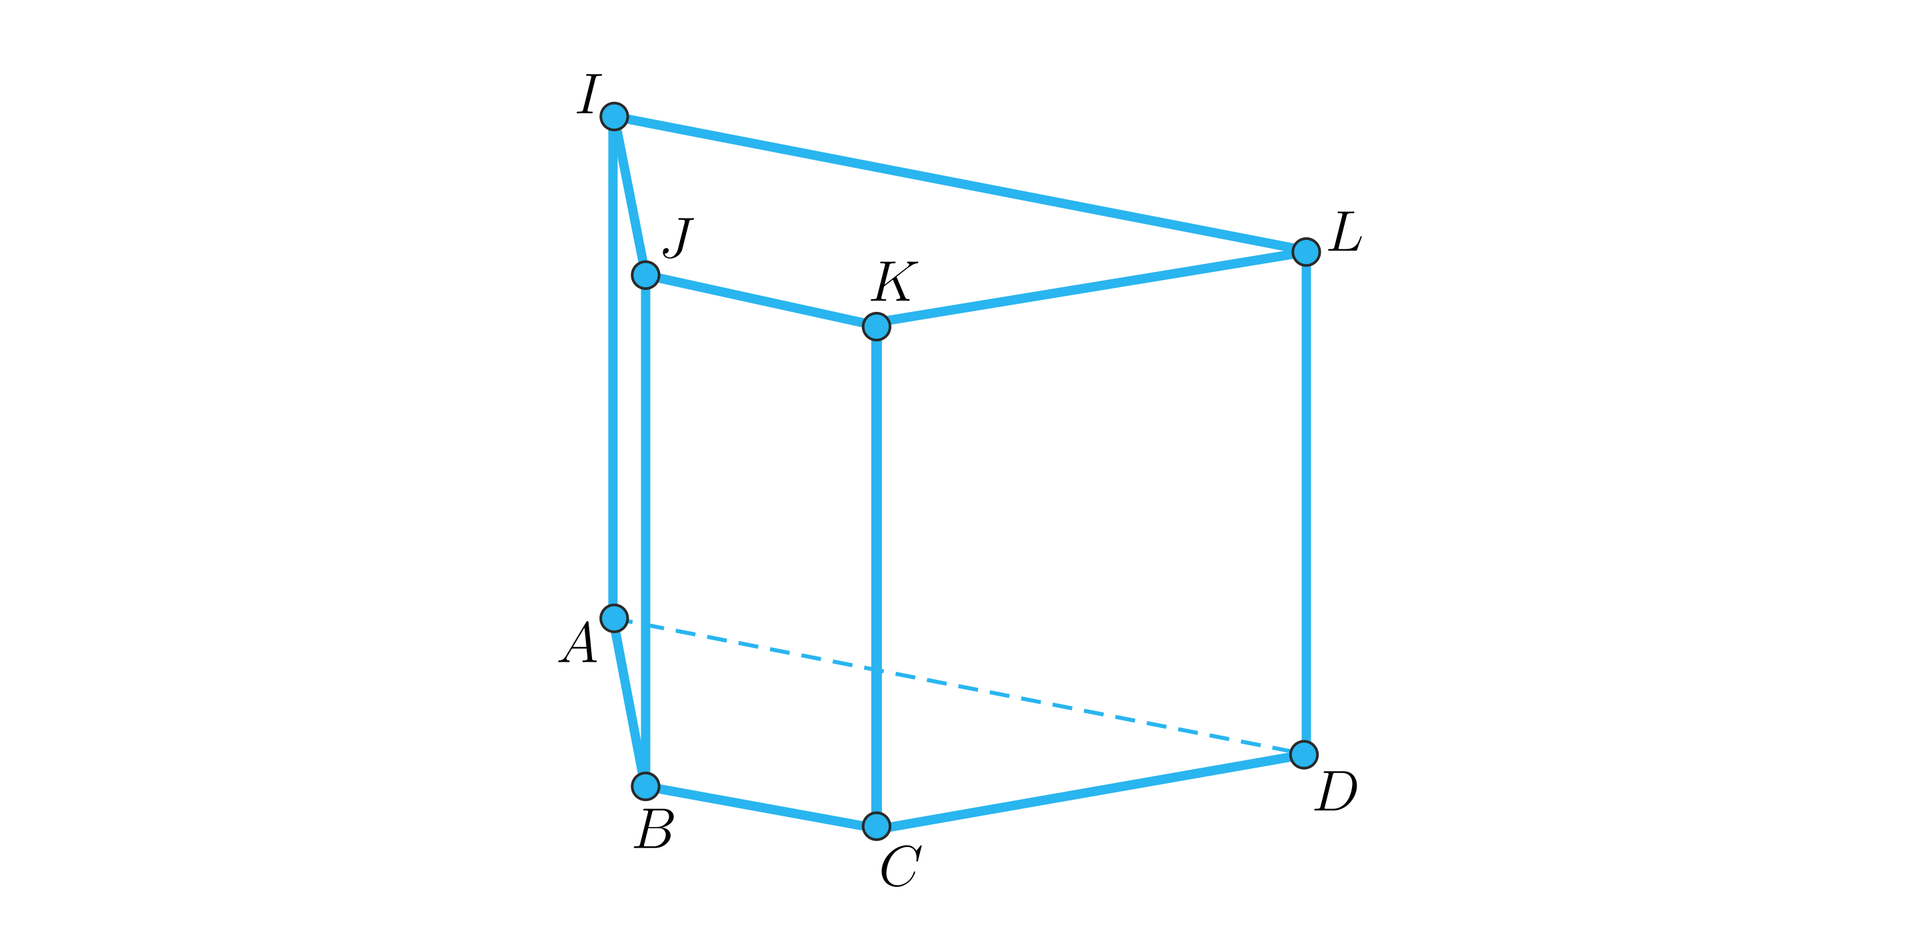 Rysunek przedstawia graniastosłup prosty o czterech prostokątnych ścianach bocznych i podstawach będących trapezami równoramiennymi. Dolna podstawa to trapez ABCD, gdzie AB i CD to ramiona, a BC i AD to równoległe do siebie podstawy trapezu. Górna podstawa graniastosłua to trapez IJKL, gdzie IJ i KL to ramiona, a JK i IL to równoległe do siebie podstawy trapezu. Dodajmy jeszcze, że nad wierzchołkiem A znajduje się wierzchołek I, nad wierzchołkiem B znajduje się wierzchołek J, nad wierzchołkiem C znajduje się wierzchołek K oraz nad wierzchołkiem D znajduje się wierzchołek L.